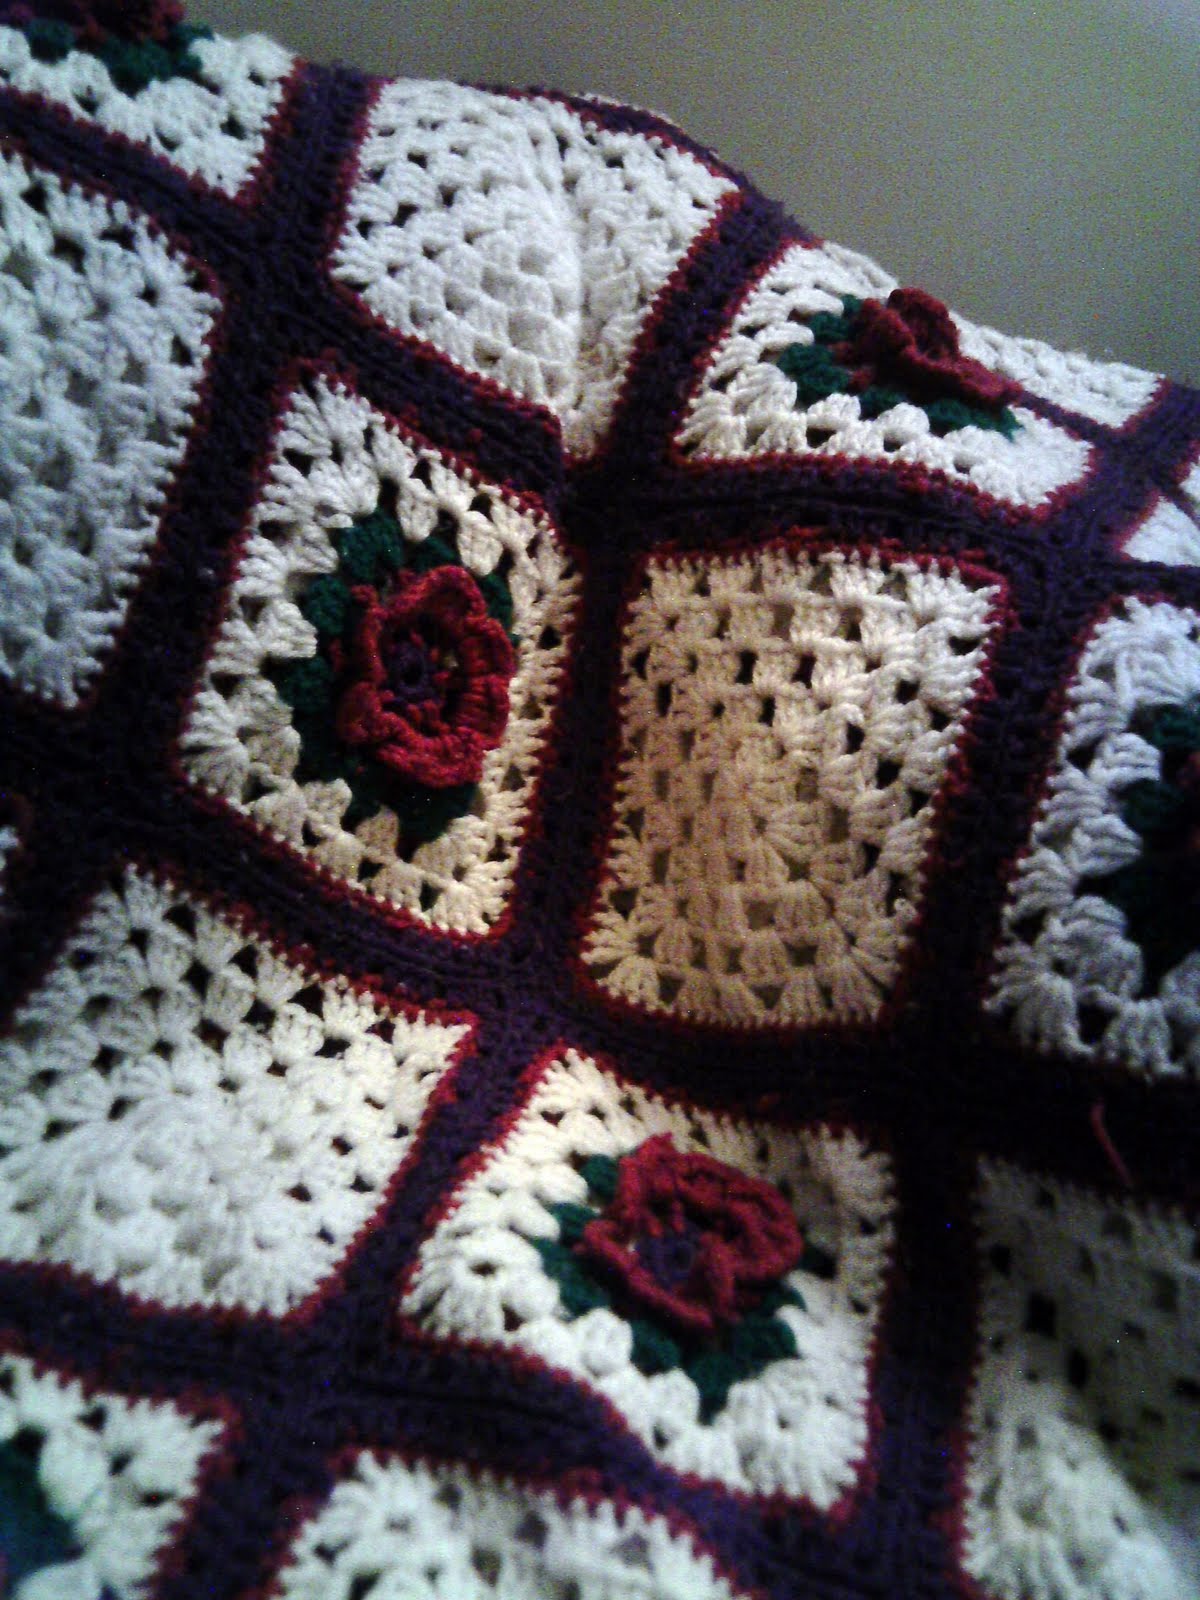 CROCHET AFGHAN SQUARES | Crochet For Beginners